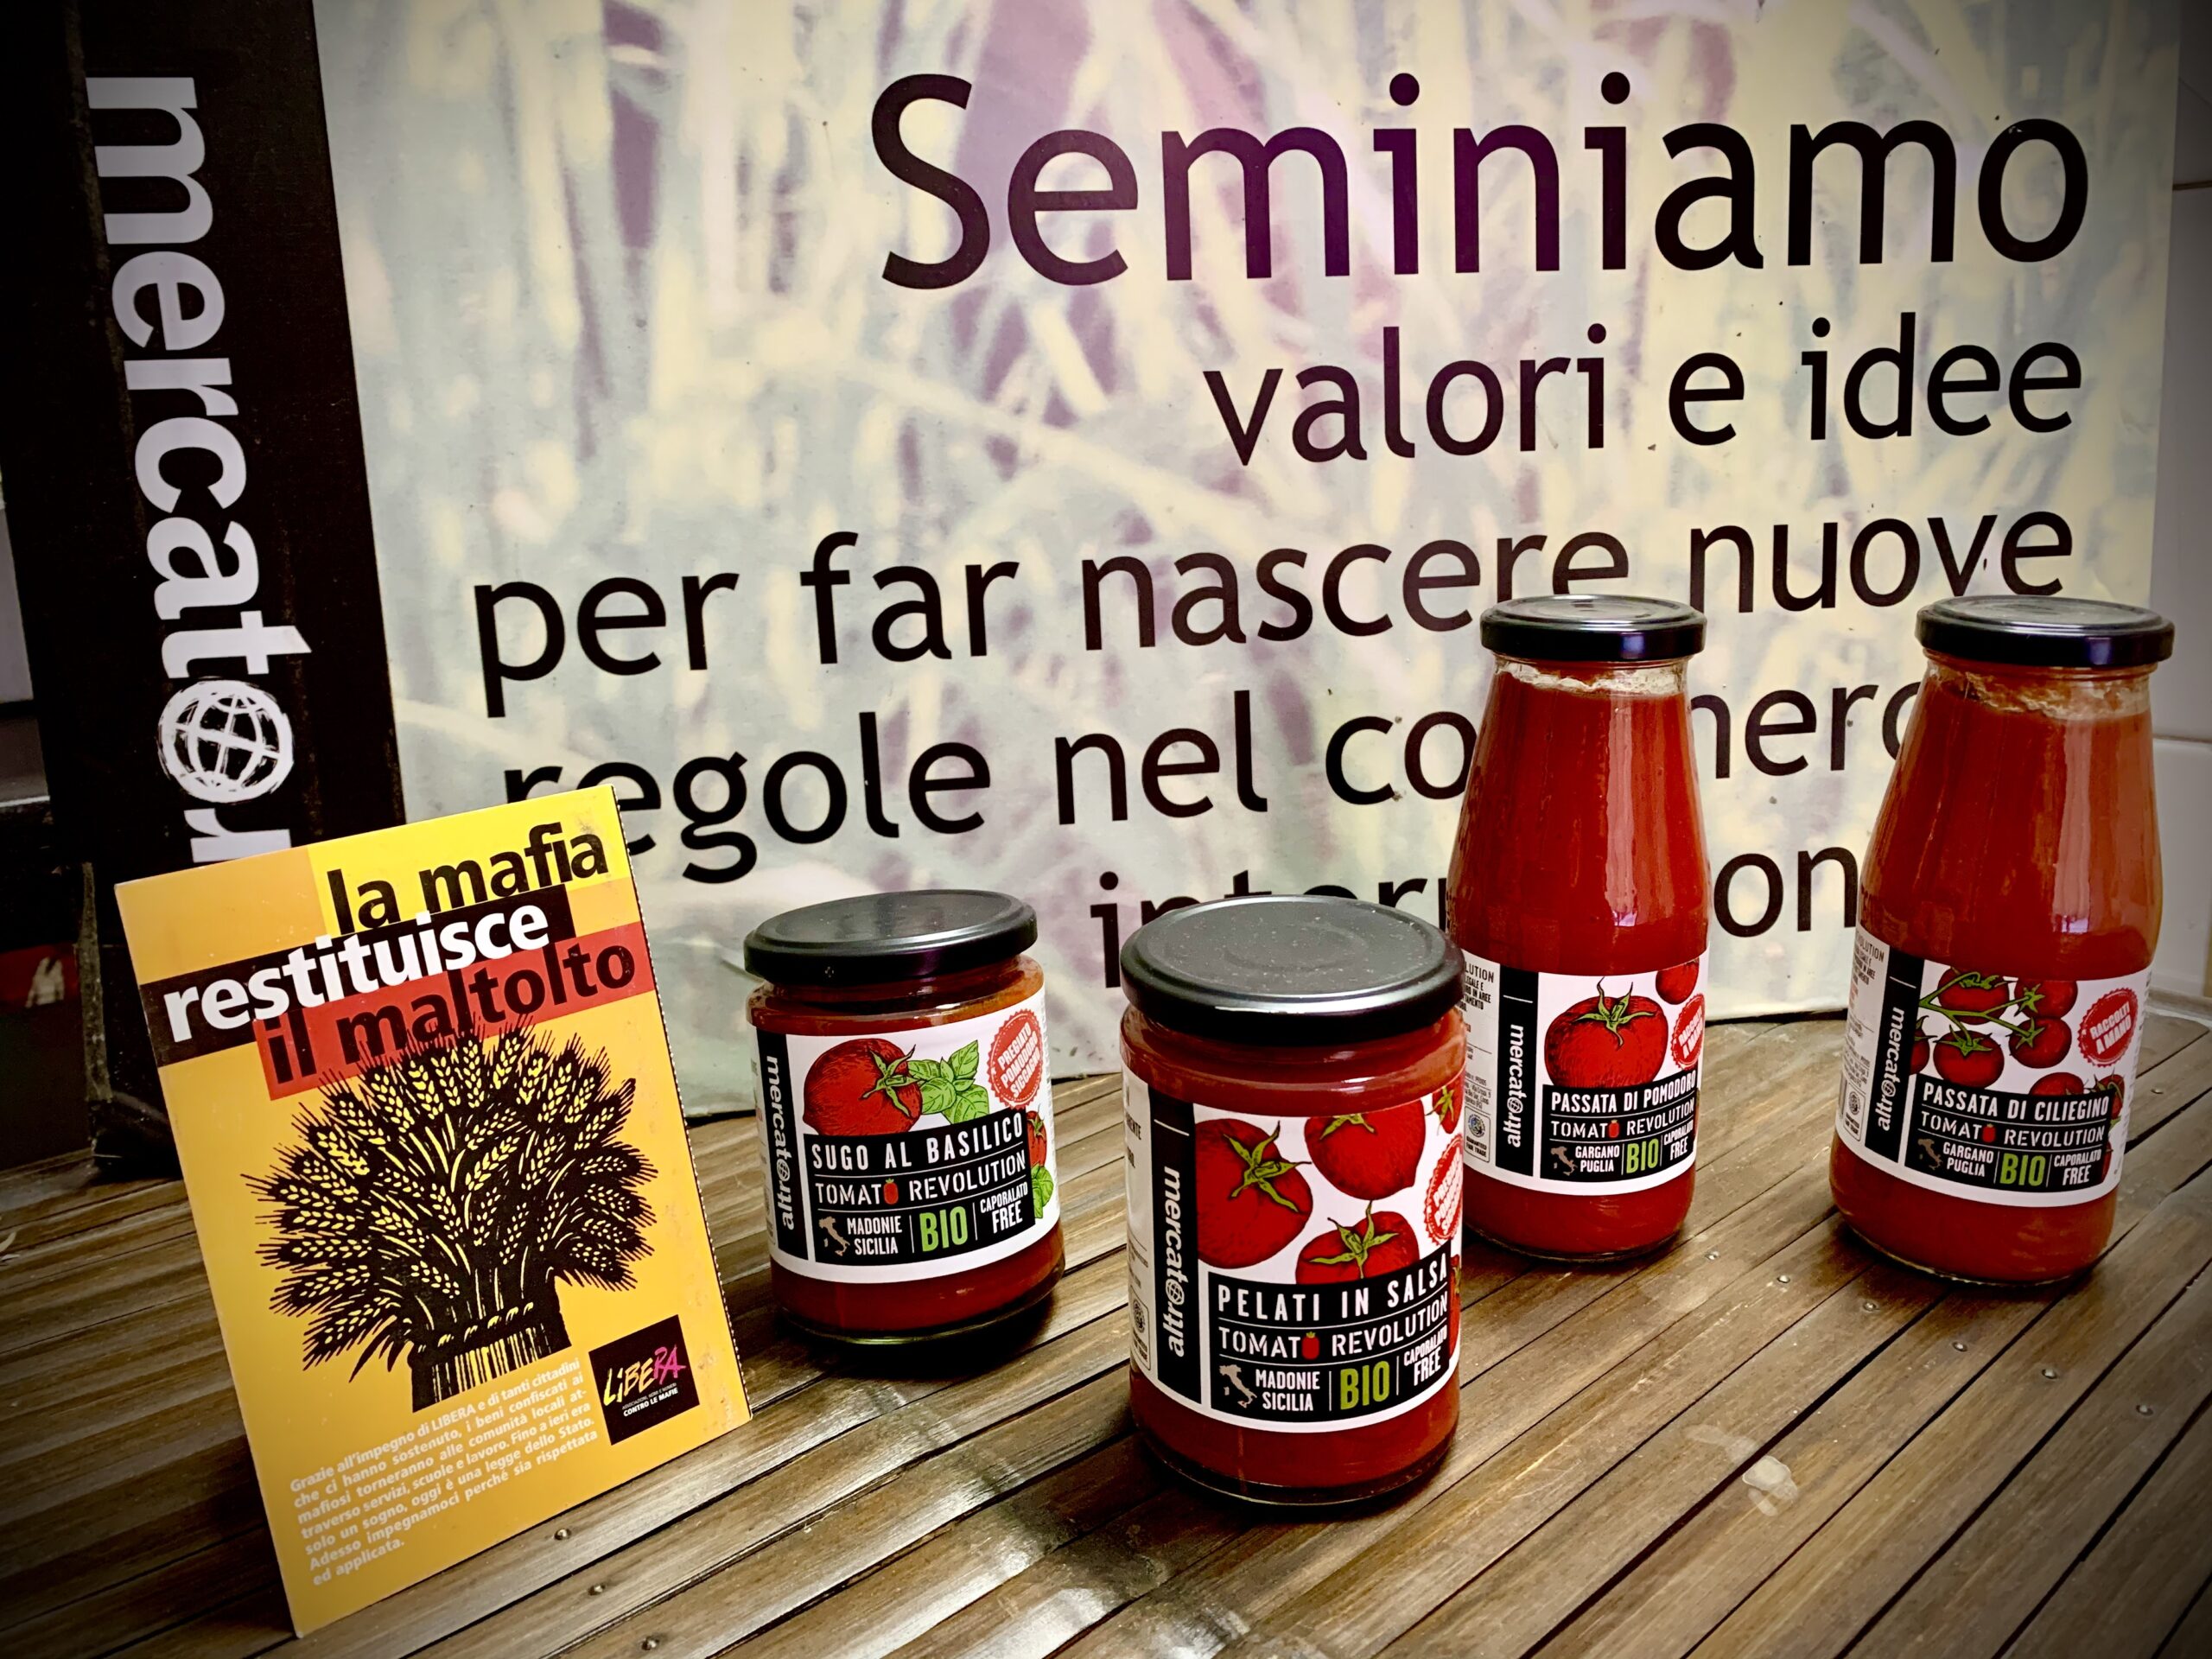 Tomato revolution, a Novi i pomodori anti-caporalato